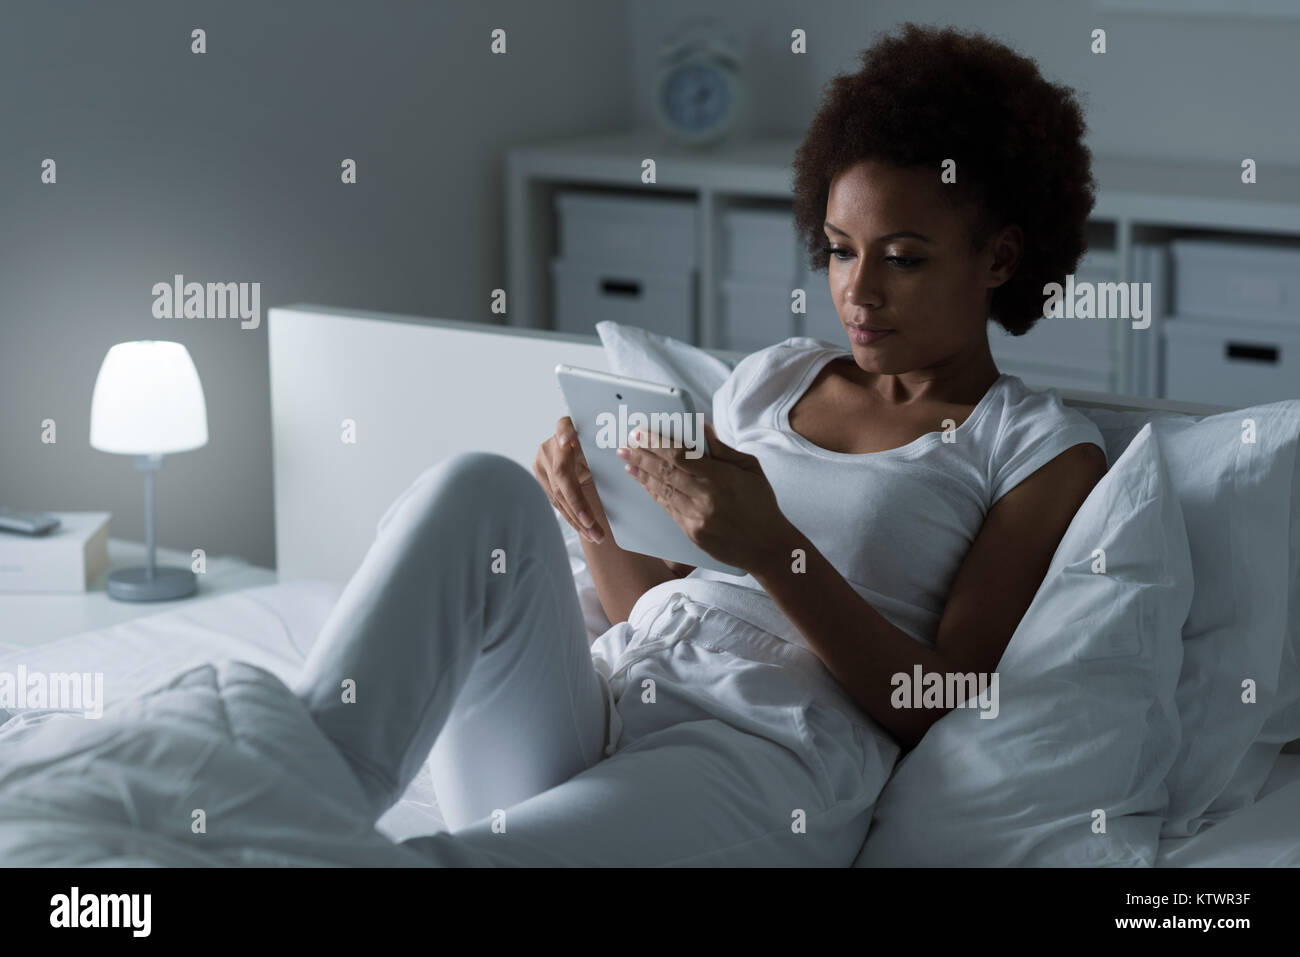 Junge afrikanische amerikanische Frau entspannt auf dem Bett, sie lächelt und Filme mit einem Touchscreen tablet, Freizeit und Lifestyle Konzept Stockfoto